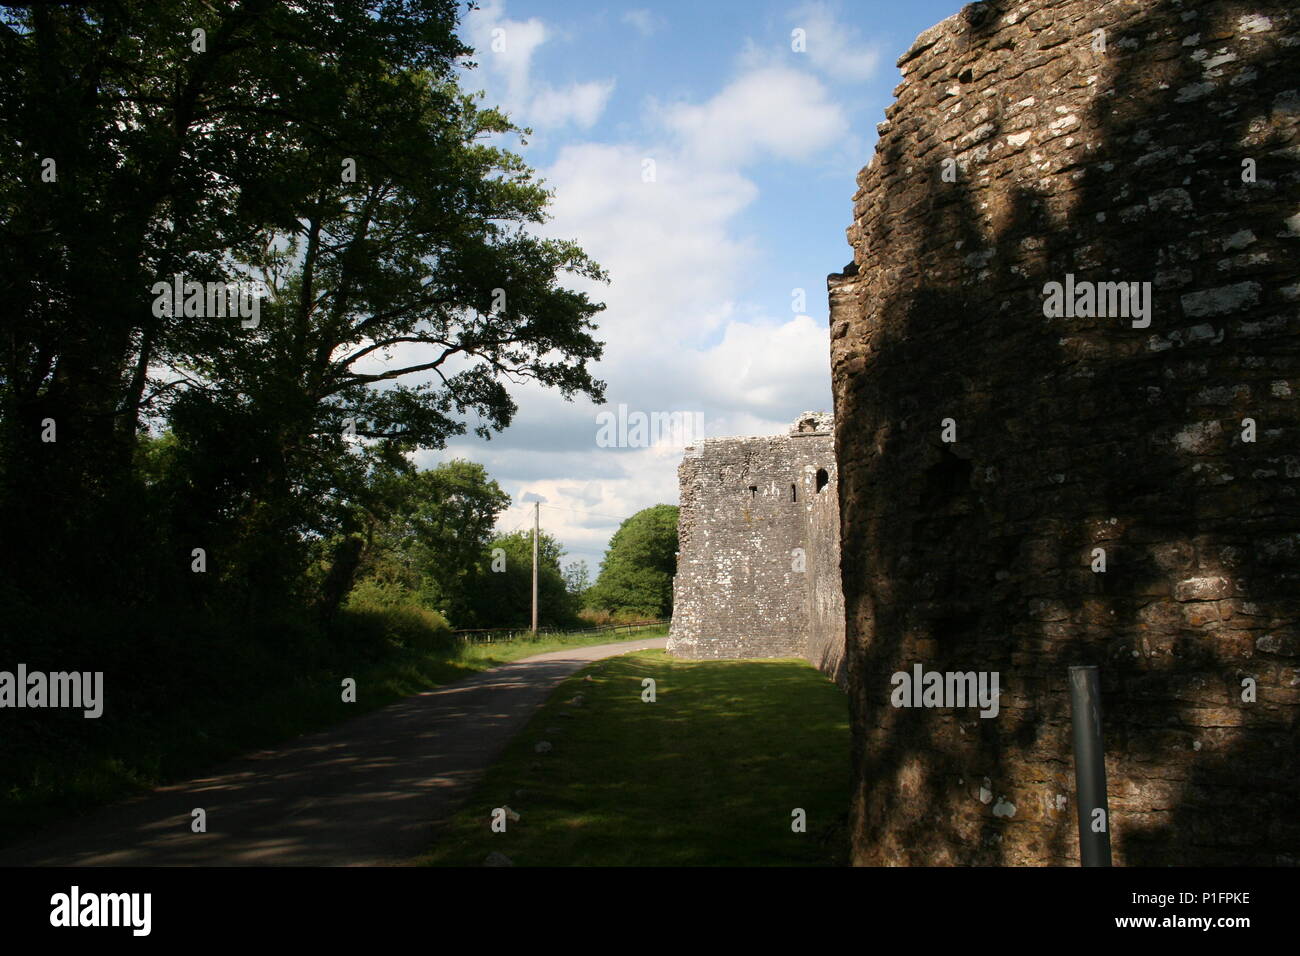 Ewenny Prieuré (Gallois : Priordy Ewenni), dans la région de Ewenny Vale of Glamorgan, Pays de Galles, était un monastère de l'ordre des Bénédictins, fondée au 12ème siècle Banque D'Images